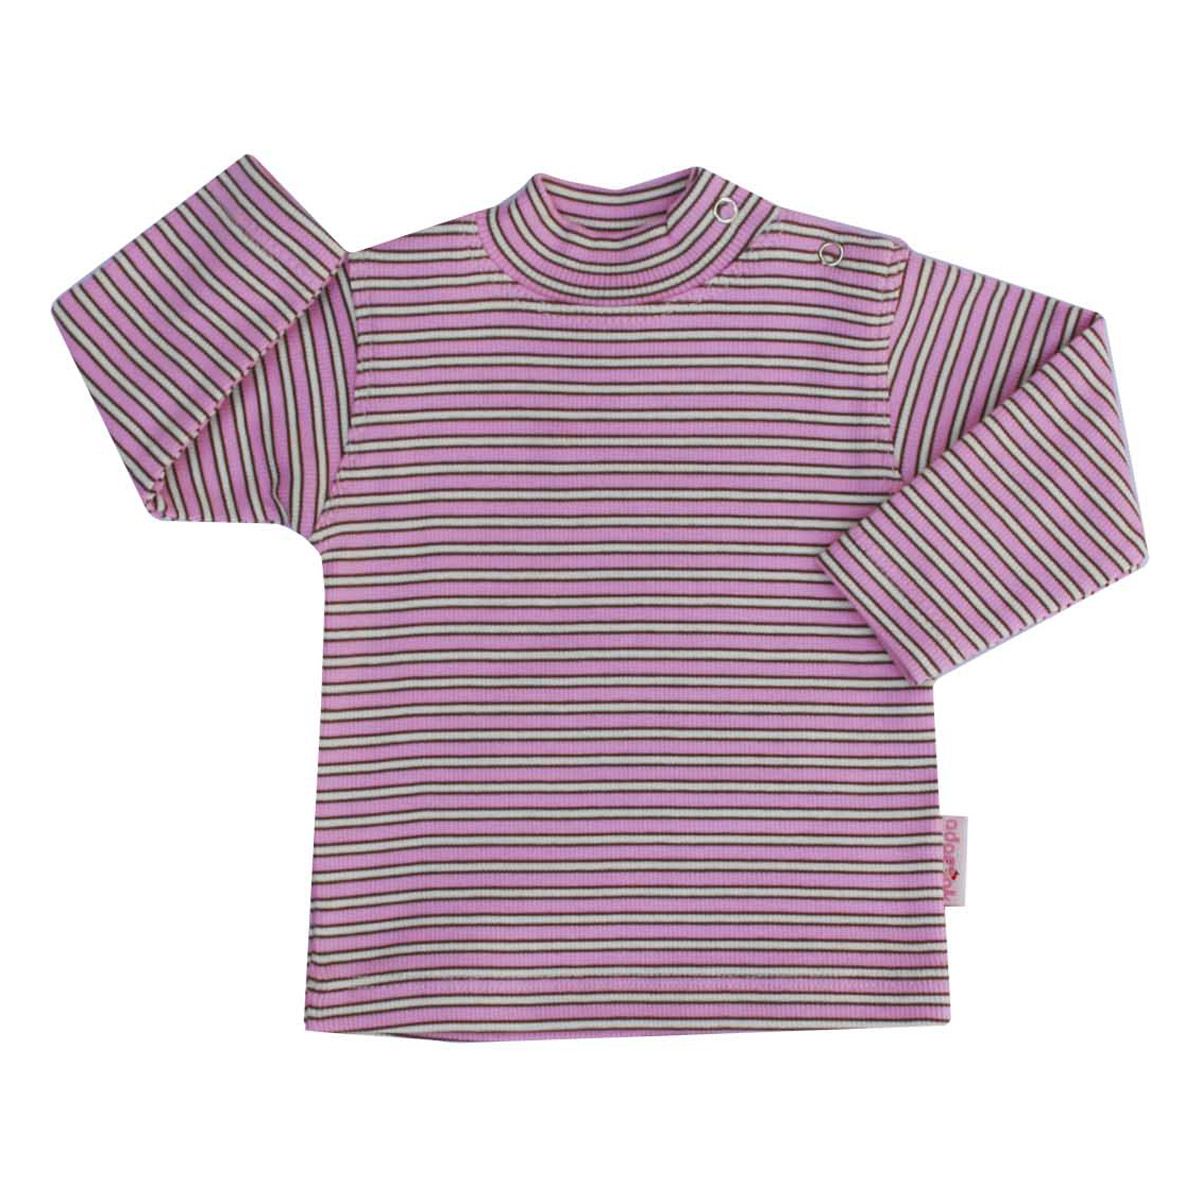 تی شرت دخترانه آدمک طرح راه راه کد 15-1446011 -  - 1